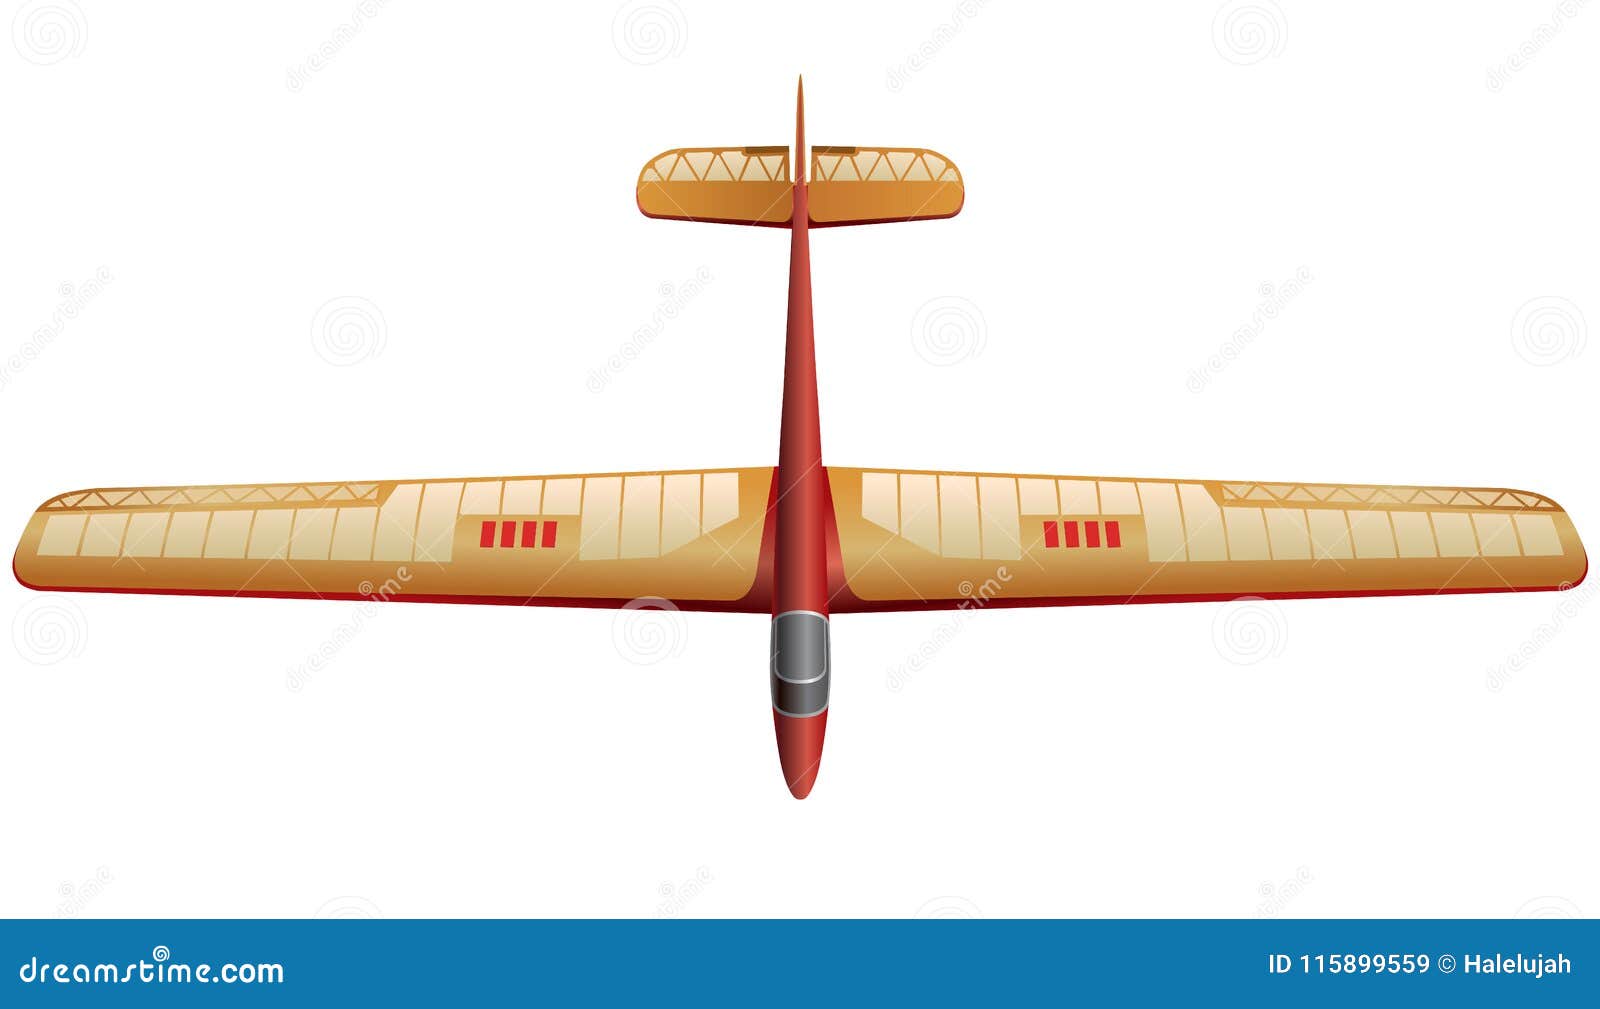 Marisol Santacruz Porn Pictures Airplane Glider Model Plan